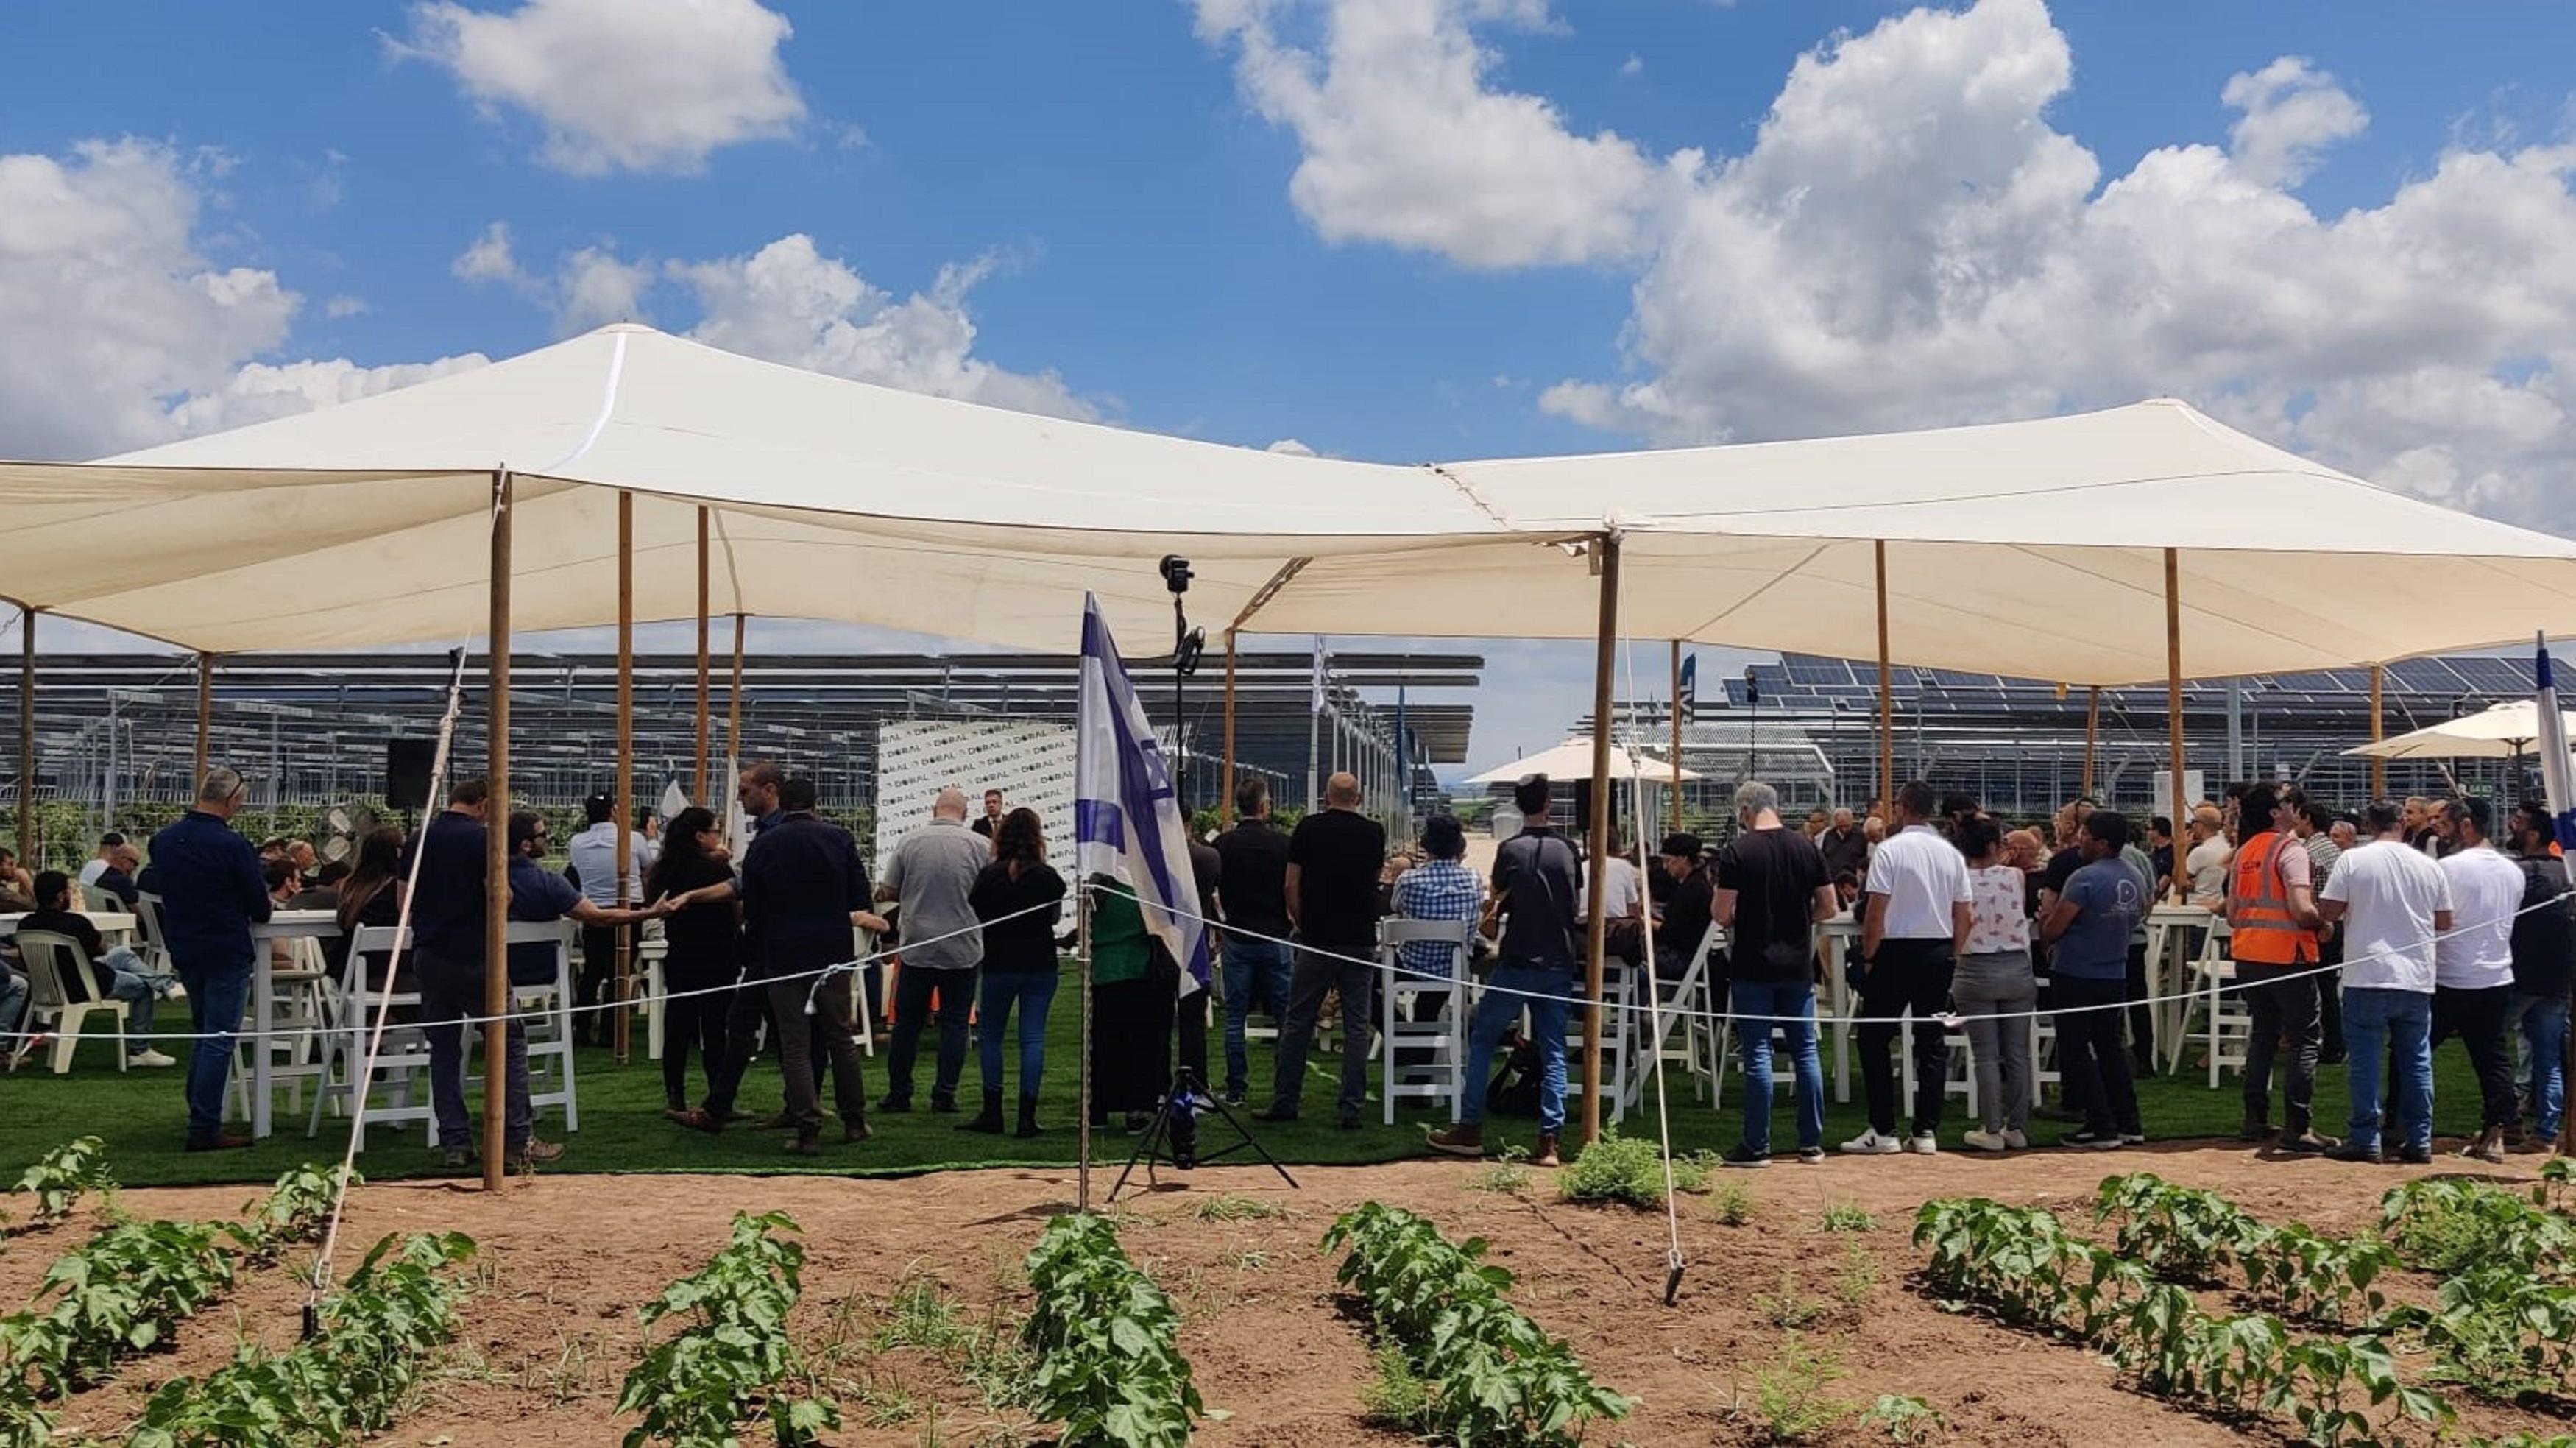 אירוע חנוכת שדה האגרו-וולטאי הראשון בישראל ברבדים. מרבית הקיבוצים מתעניינים בתחום